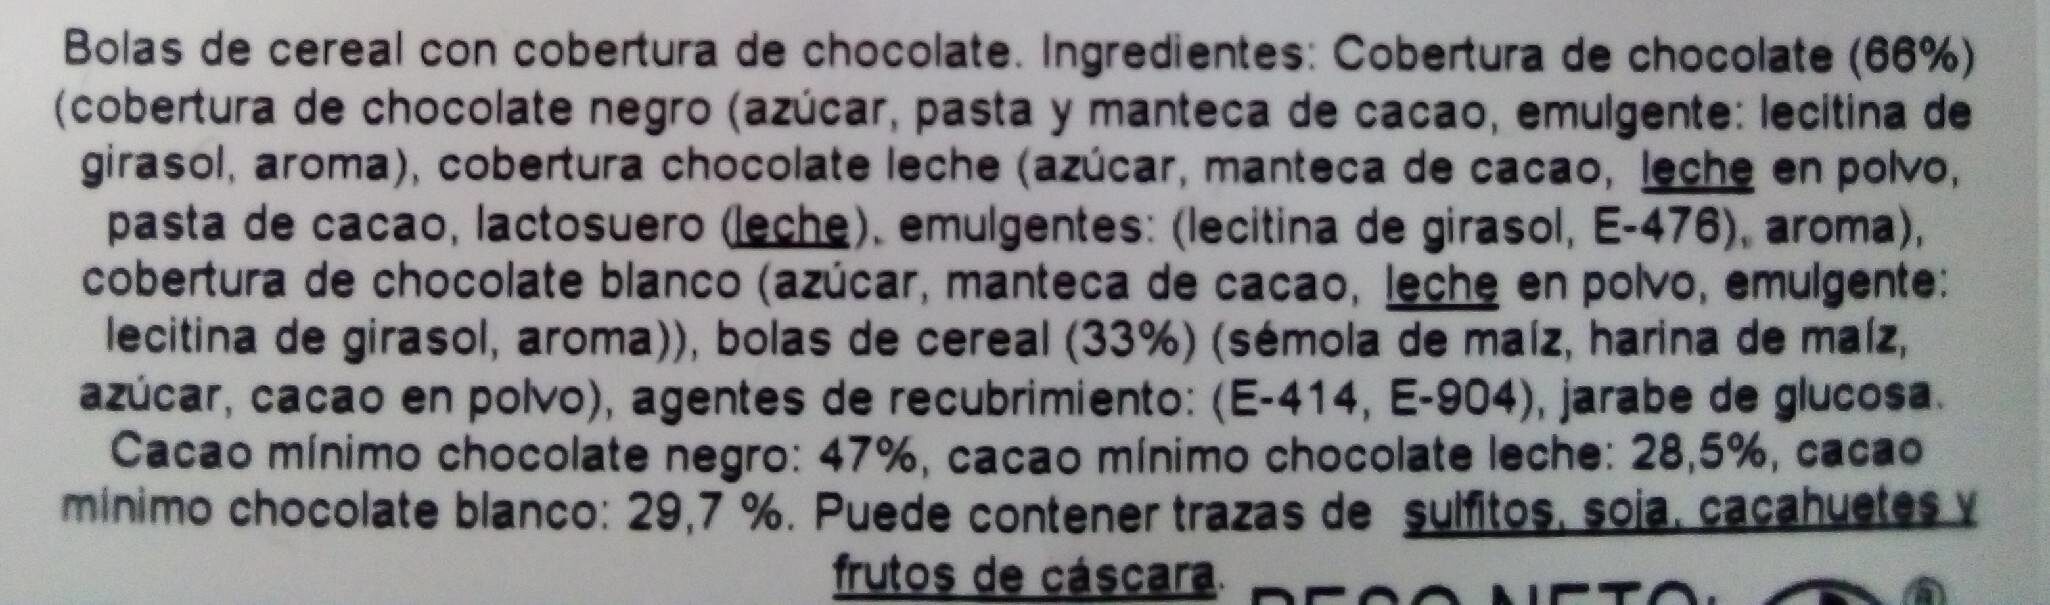 Coctel Cereales 3 Chocolates - Información nutricional